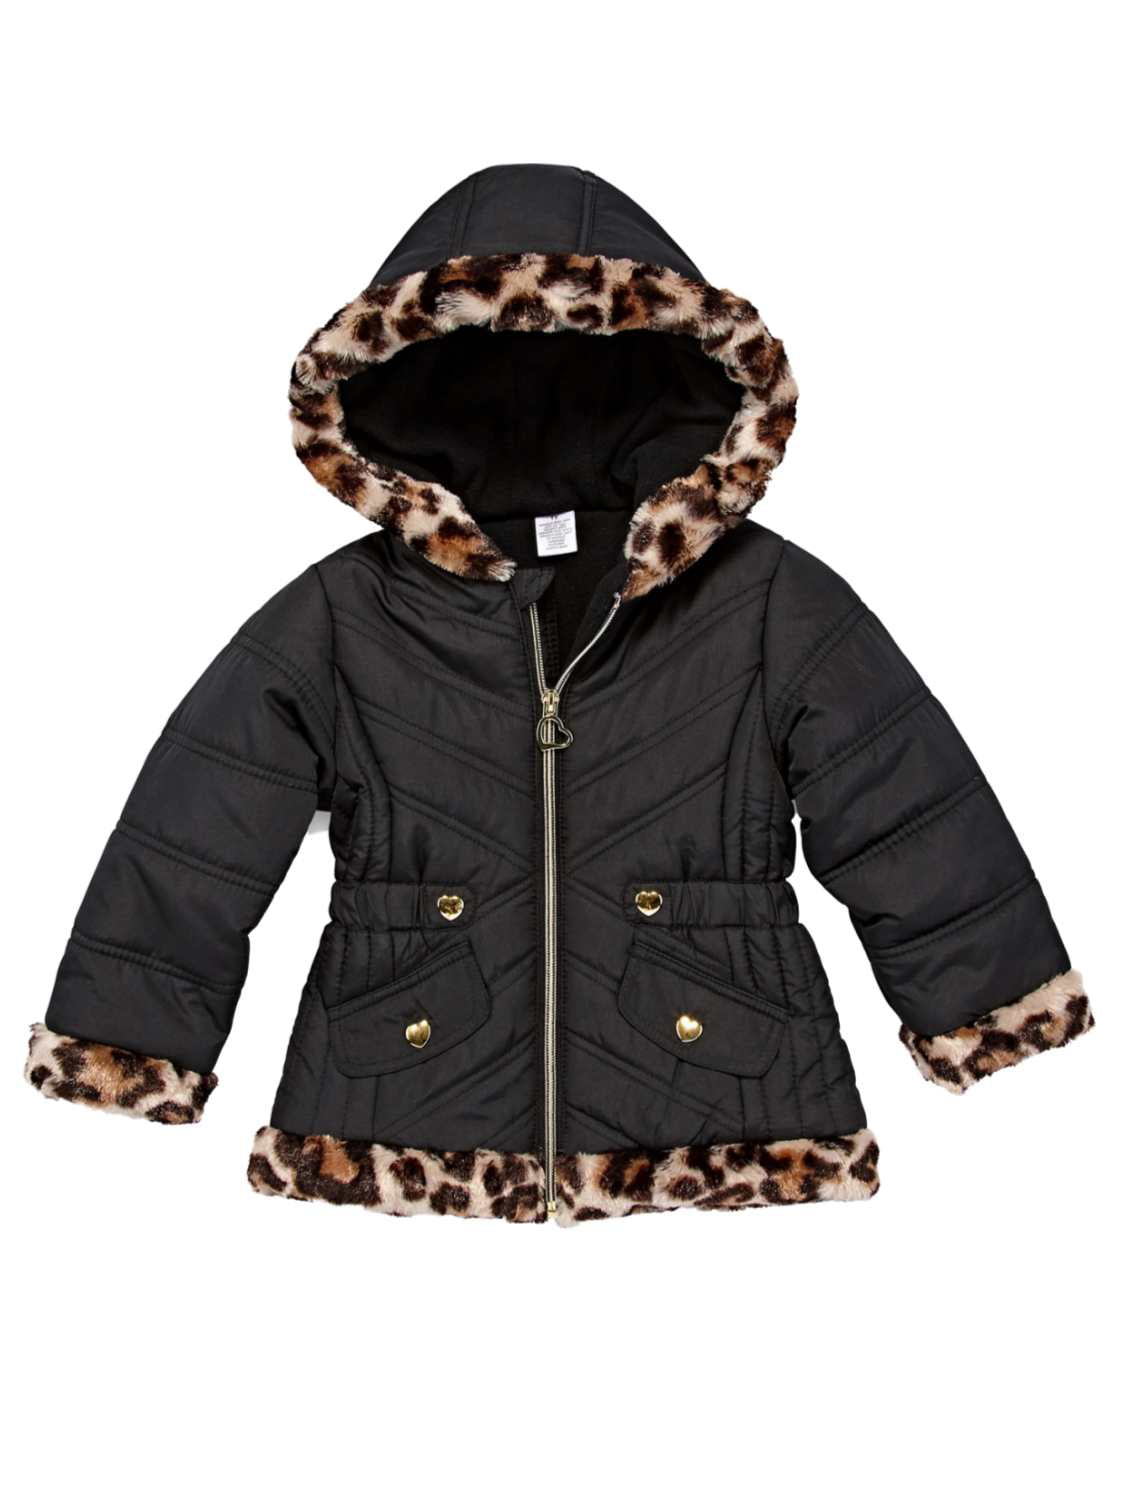 Baby Toddler girls winter Add wool leopard grain Hooded Coat Outerwear Jacket 